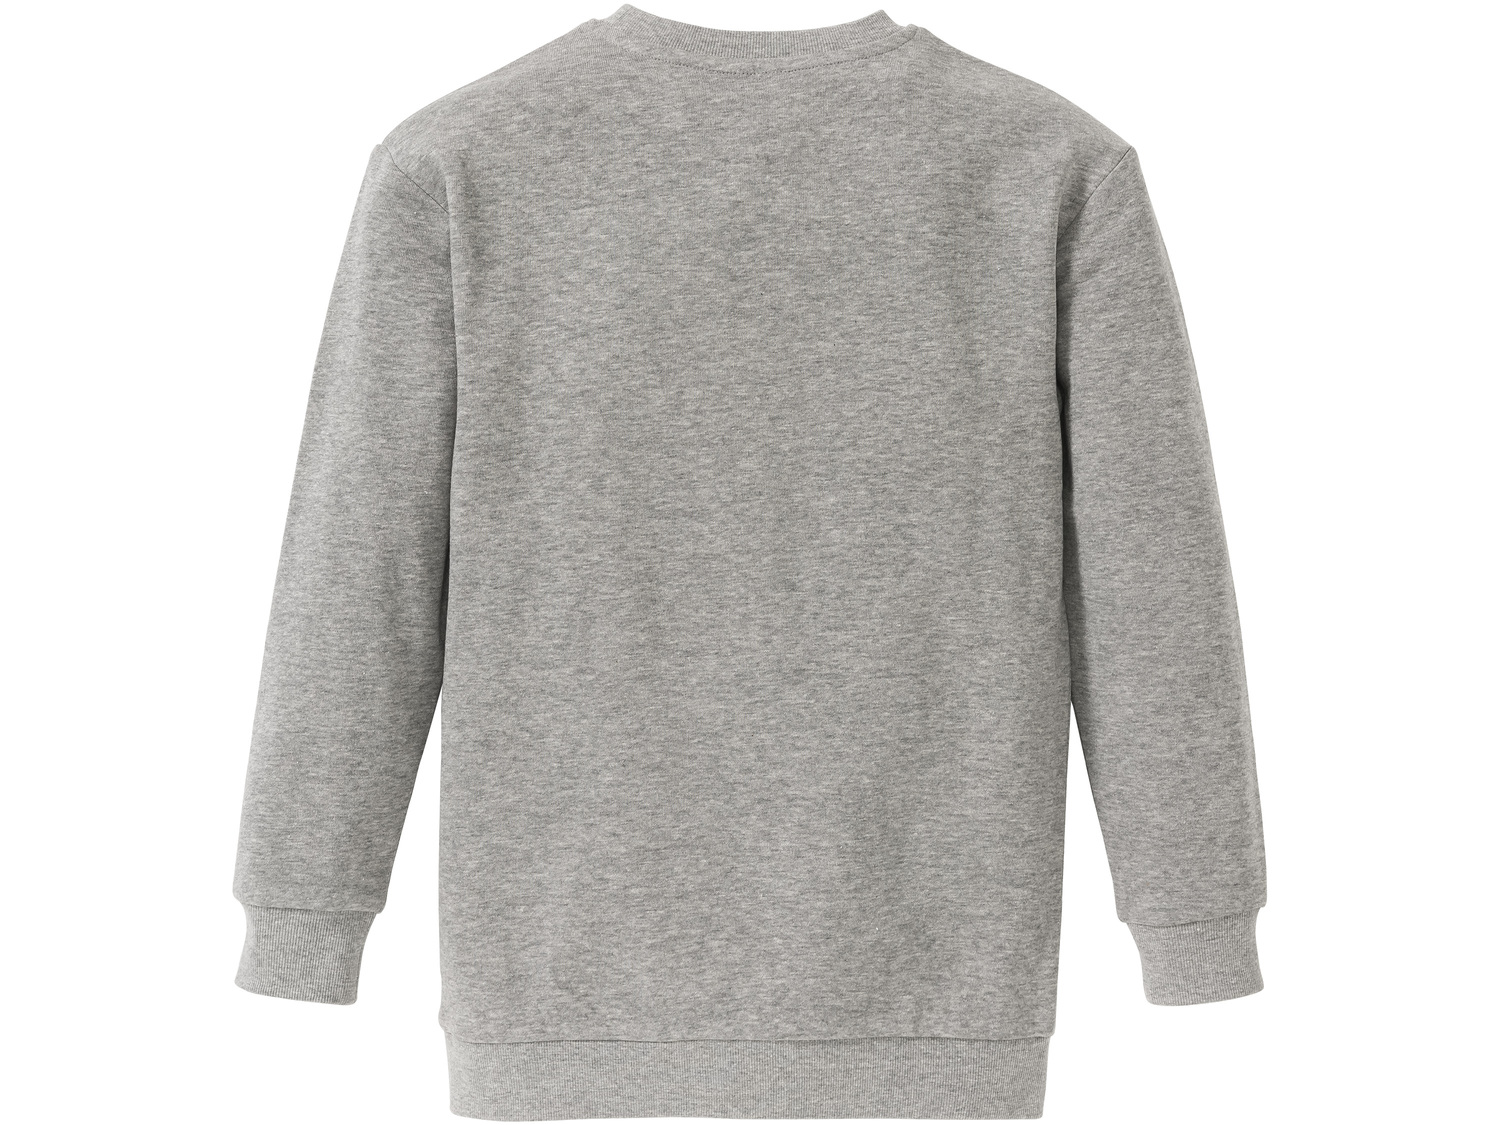 Bluza dresowa Pepperts, cena 29,99 PLN 
- wysoka zawartość bawełny
- rozmiary: ...